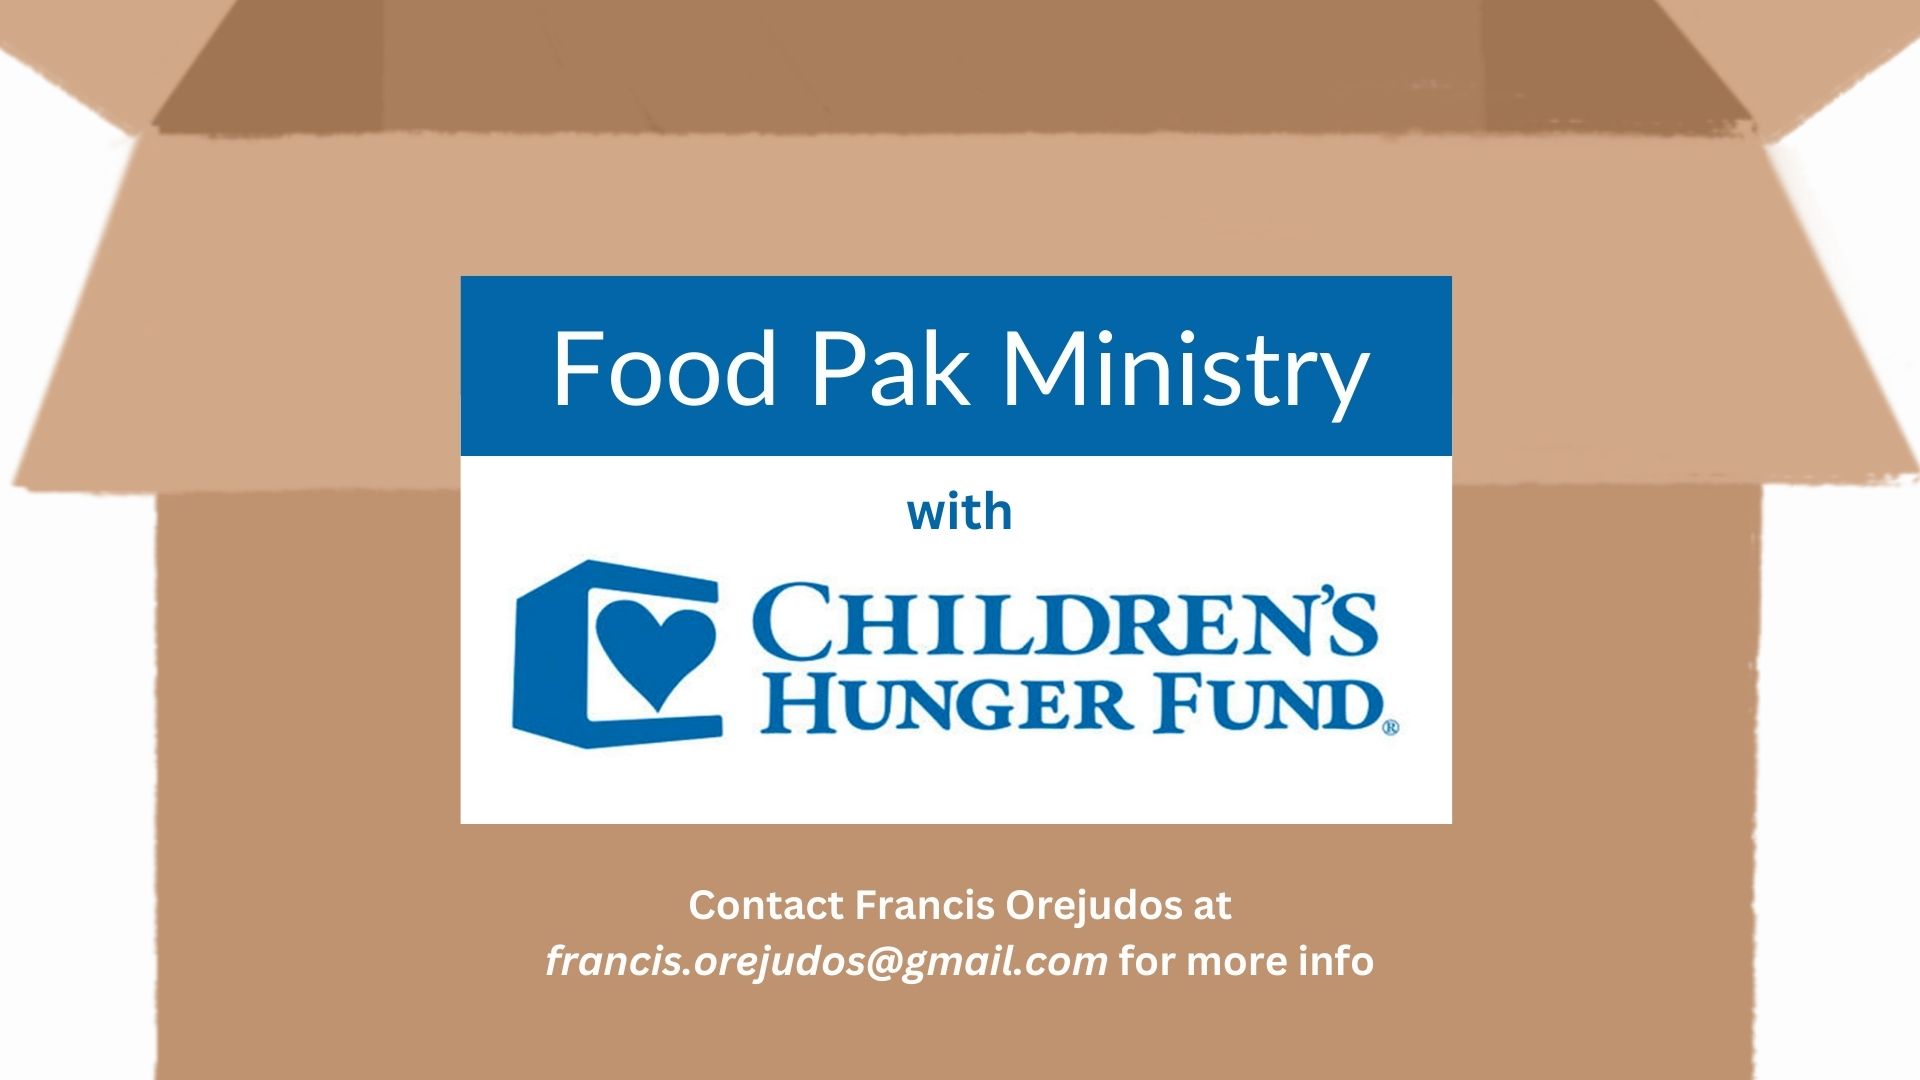 Children's Hunger Fund